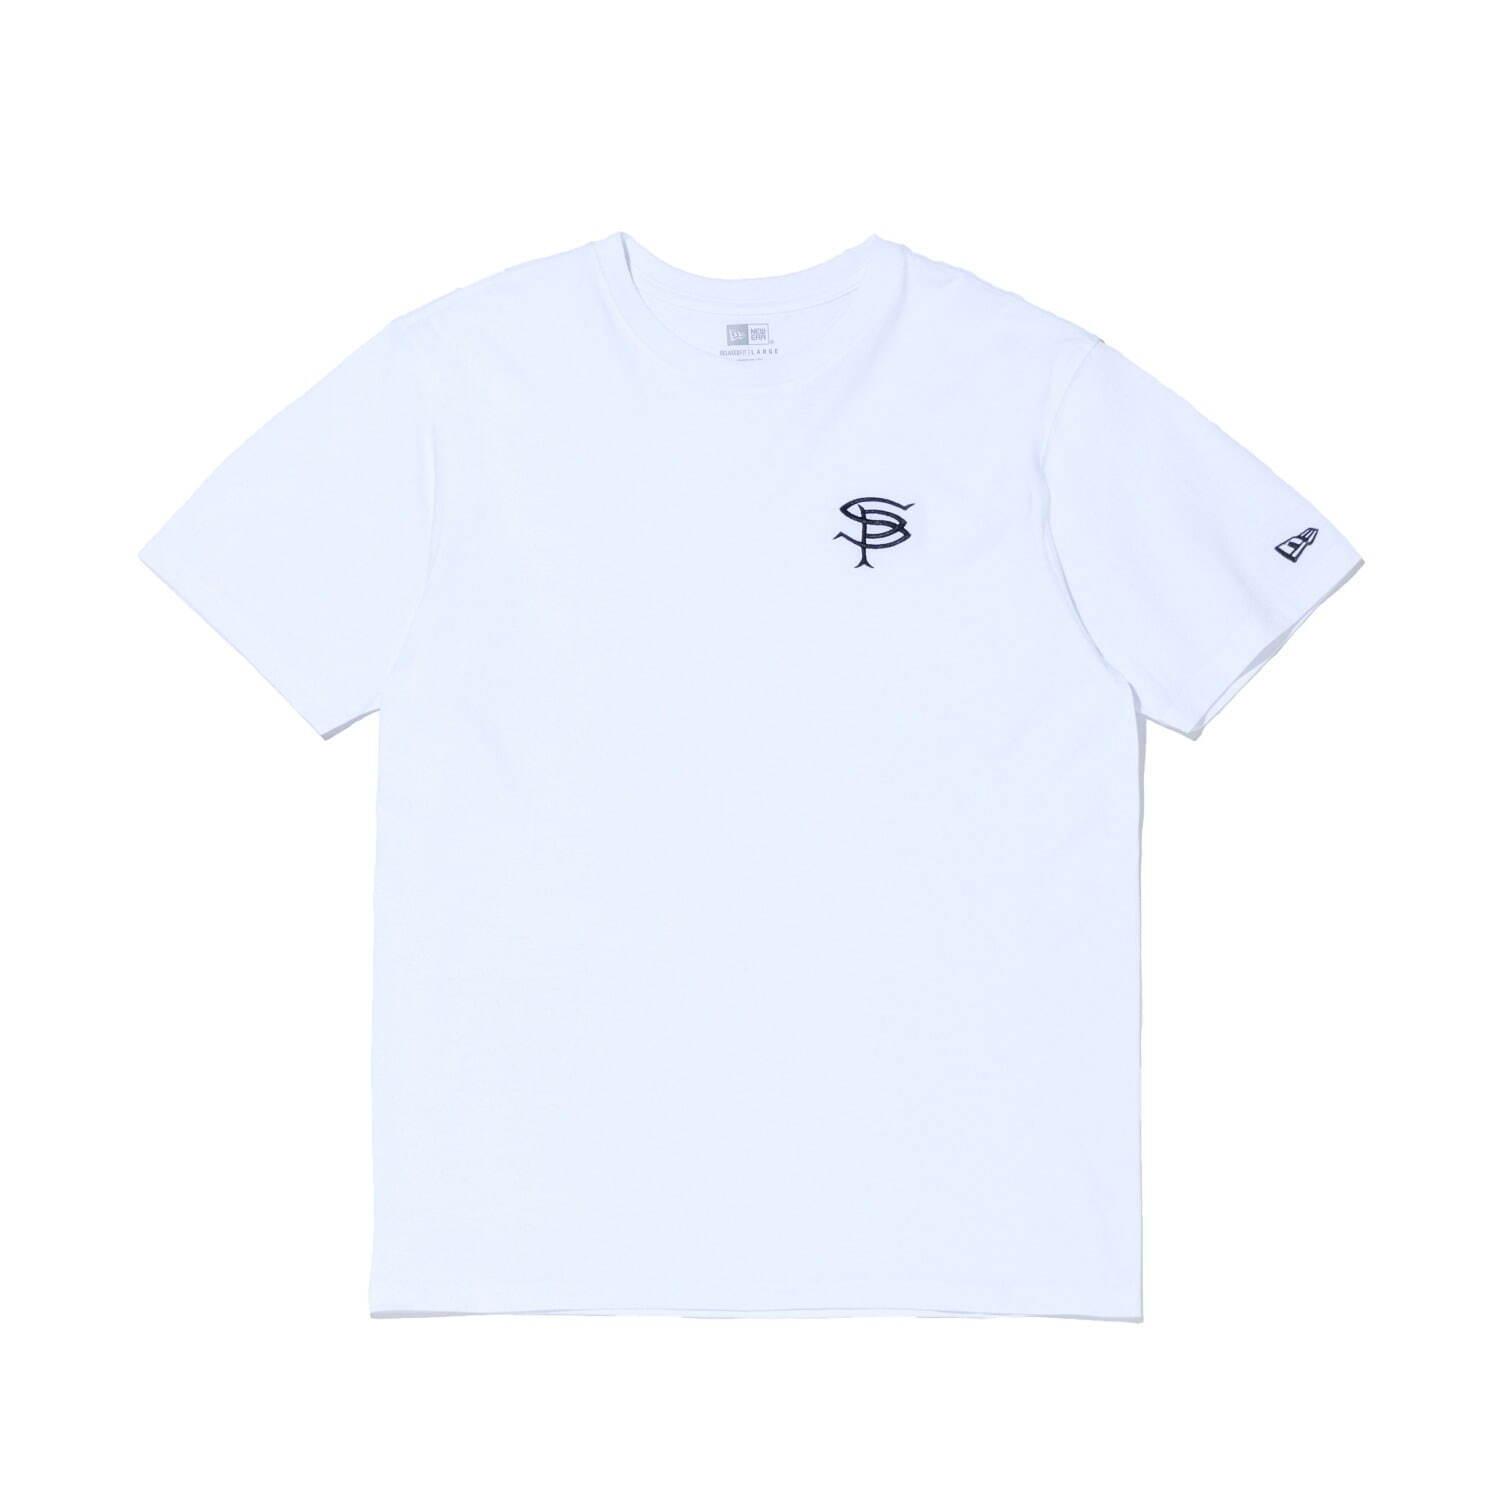 ソフネット×ニューエラ“SP”ロゴ刺繍入りTシャツやキャップなどリラックスウェア コピー